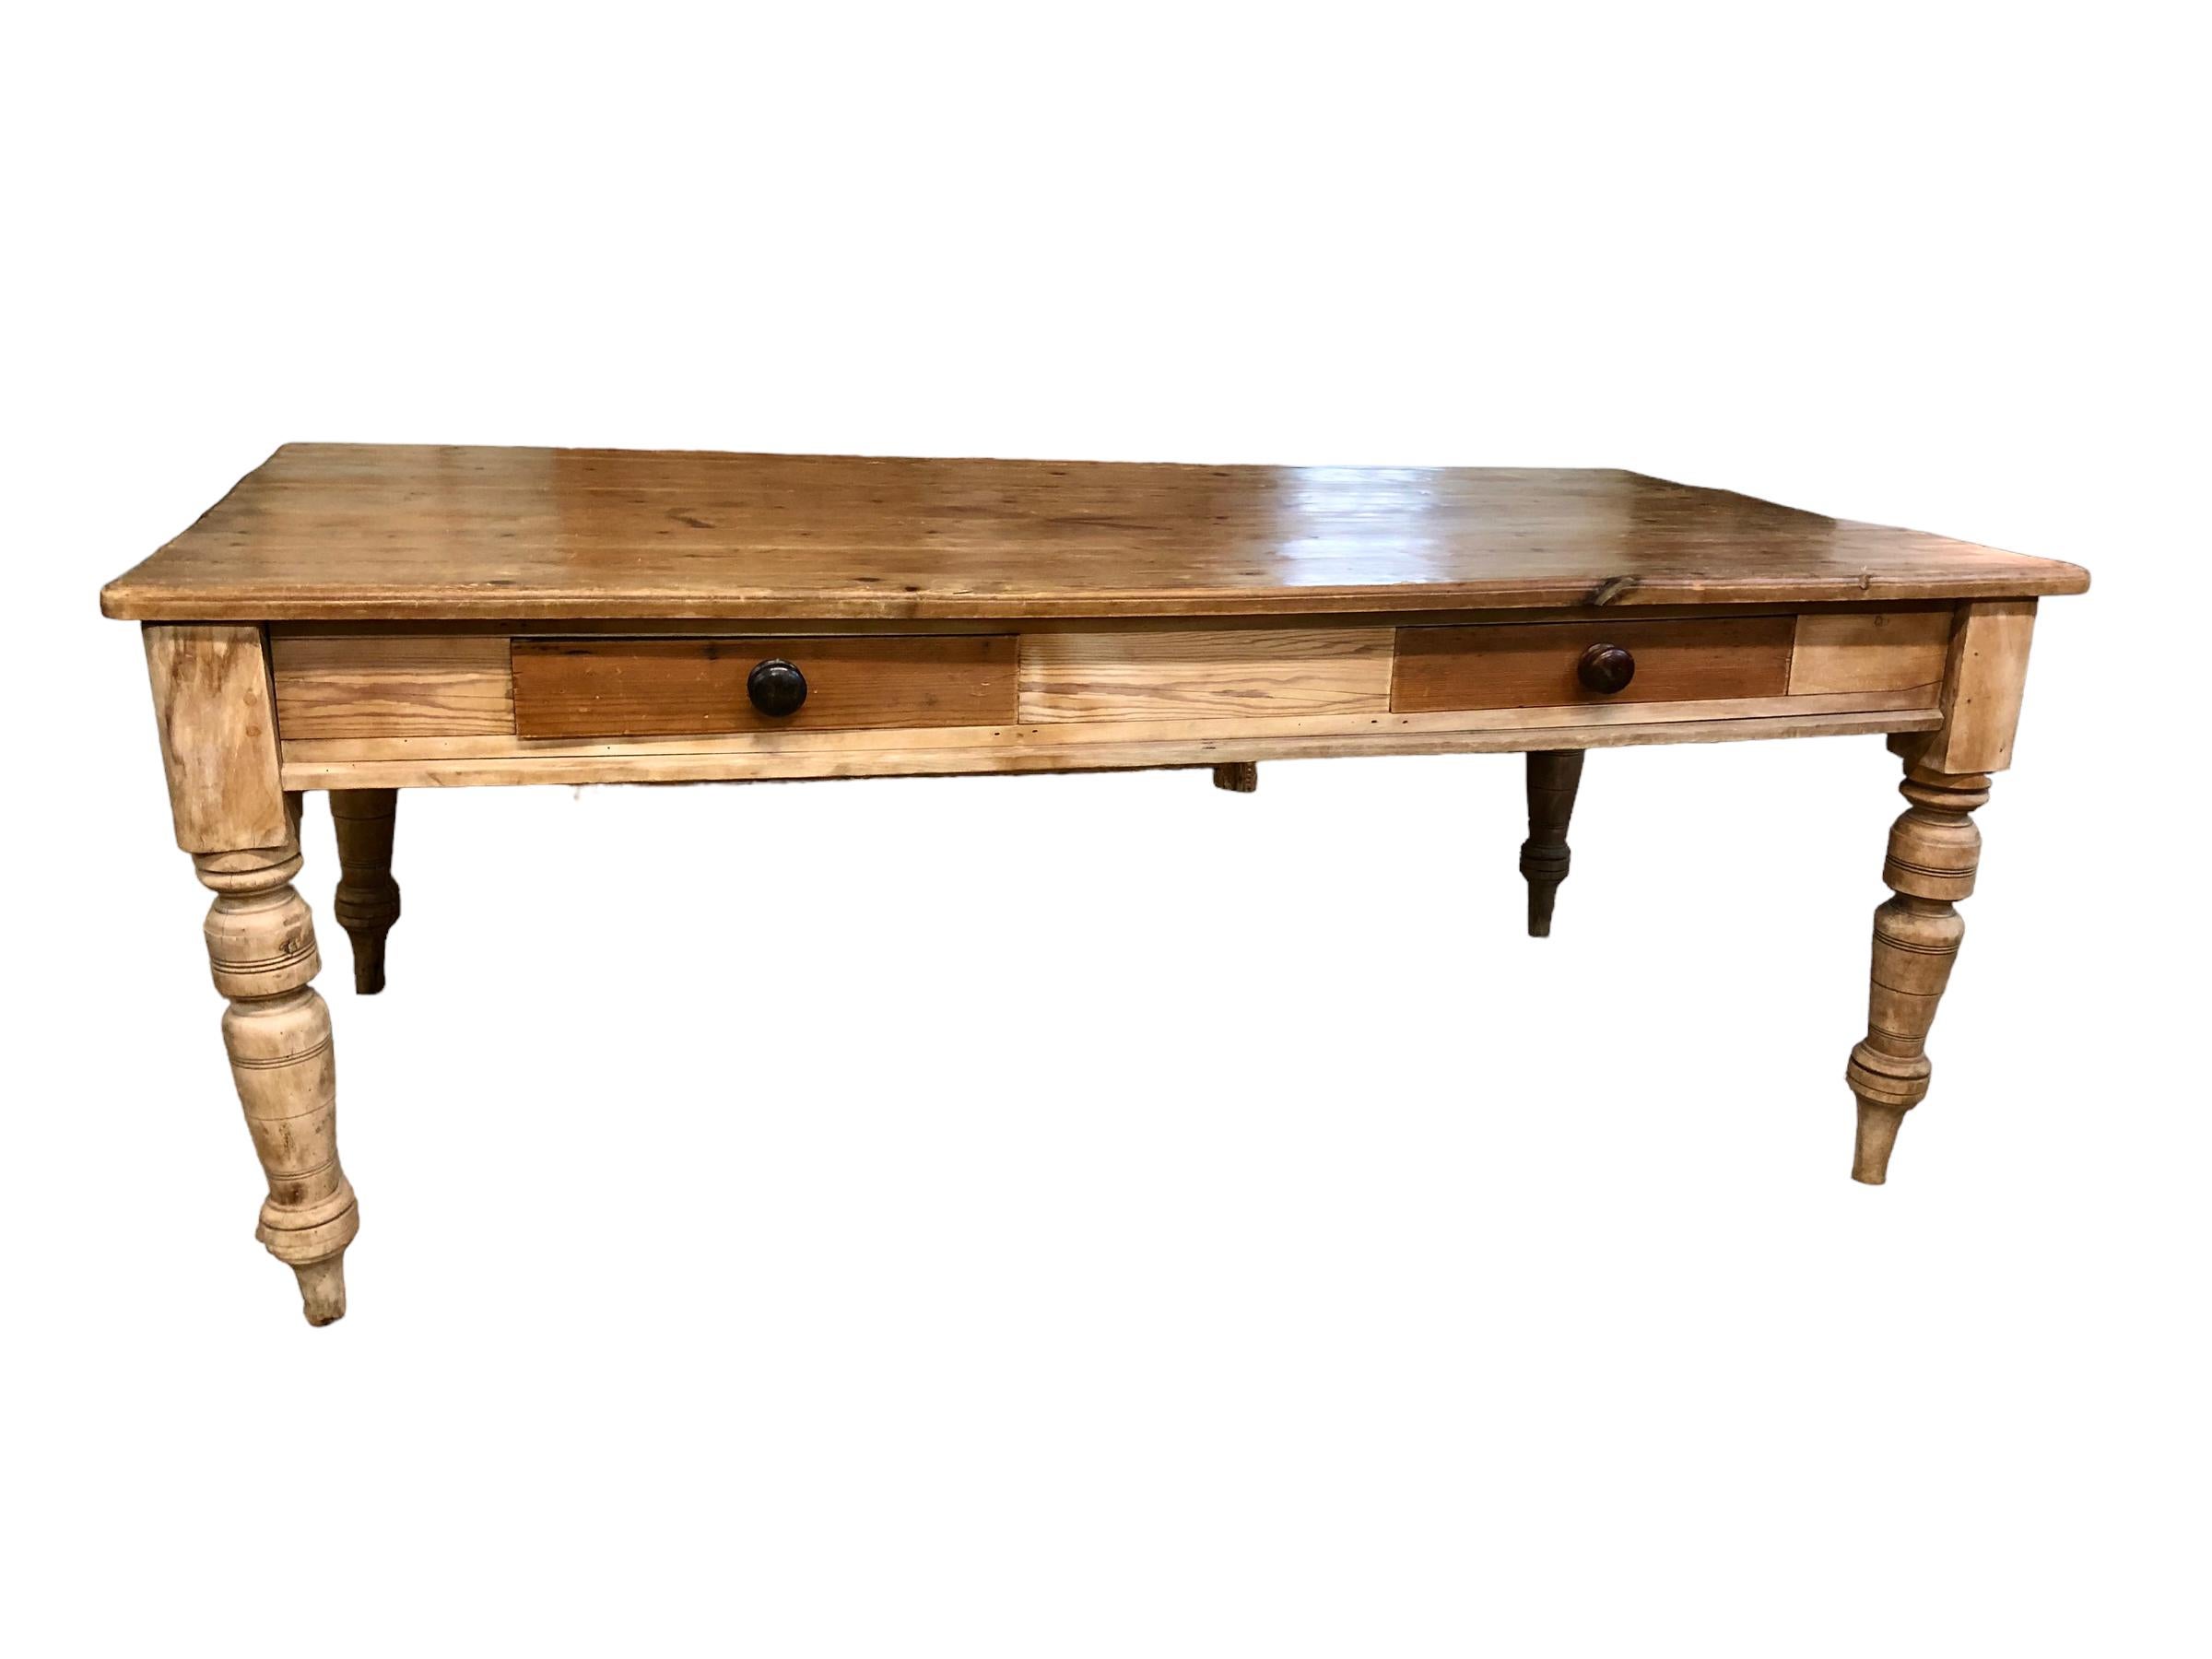 Table de ferme à deux tiroirs en pin anglais des années 1920. La table a un beau plateau épais qui a été raboté à la main et une merveilleuse patine. La table repose sur de solides pieds tournés. Chaque tiroir s'étend sur la quasi-totalité de la